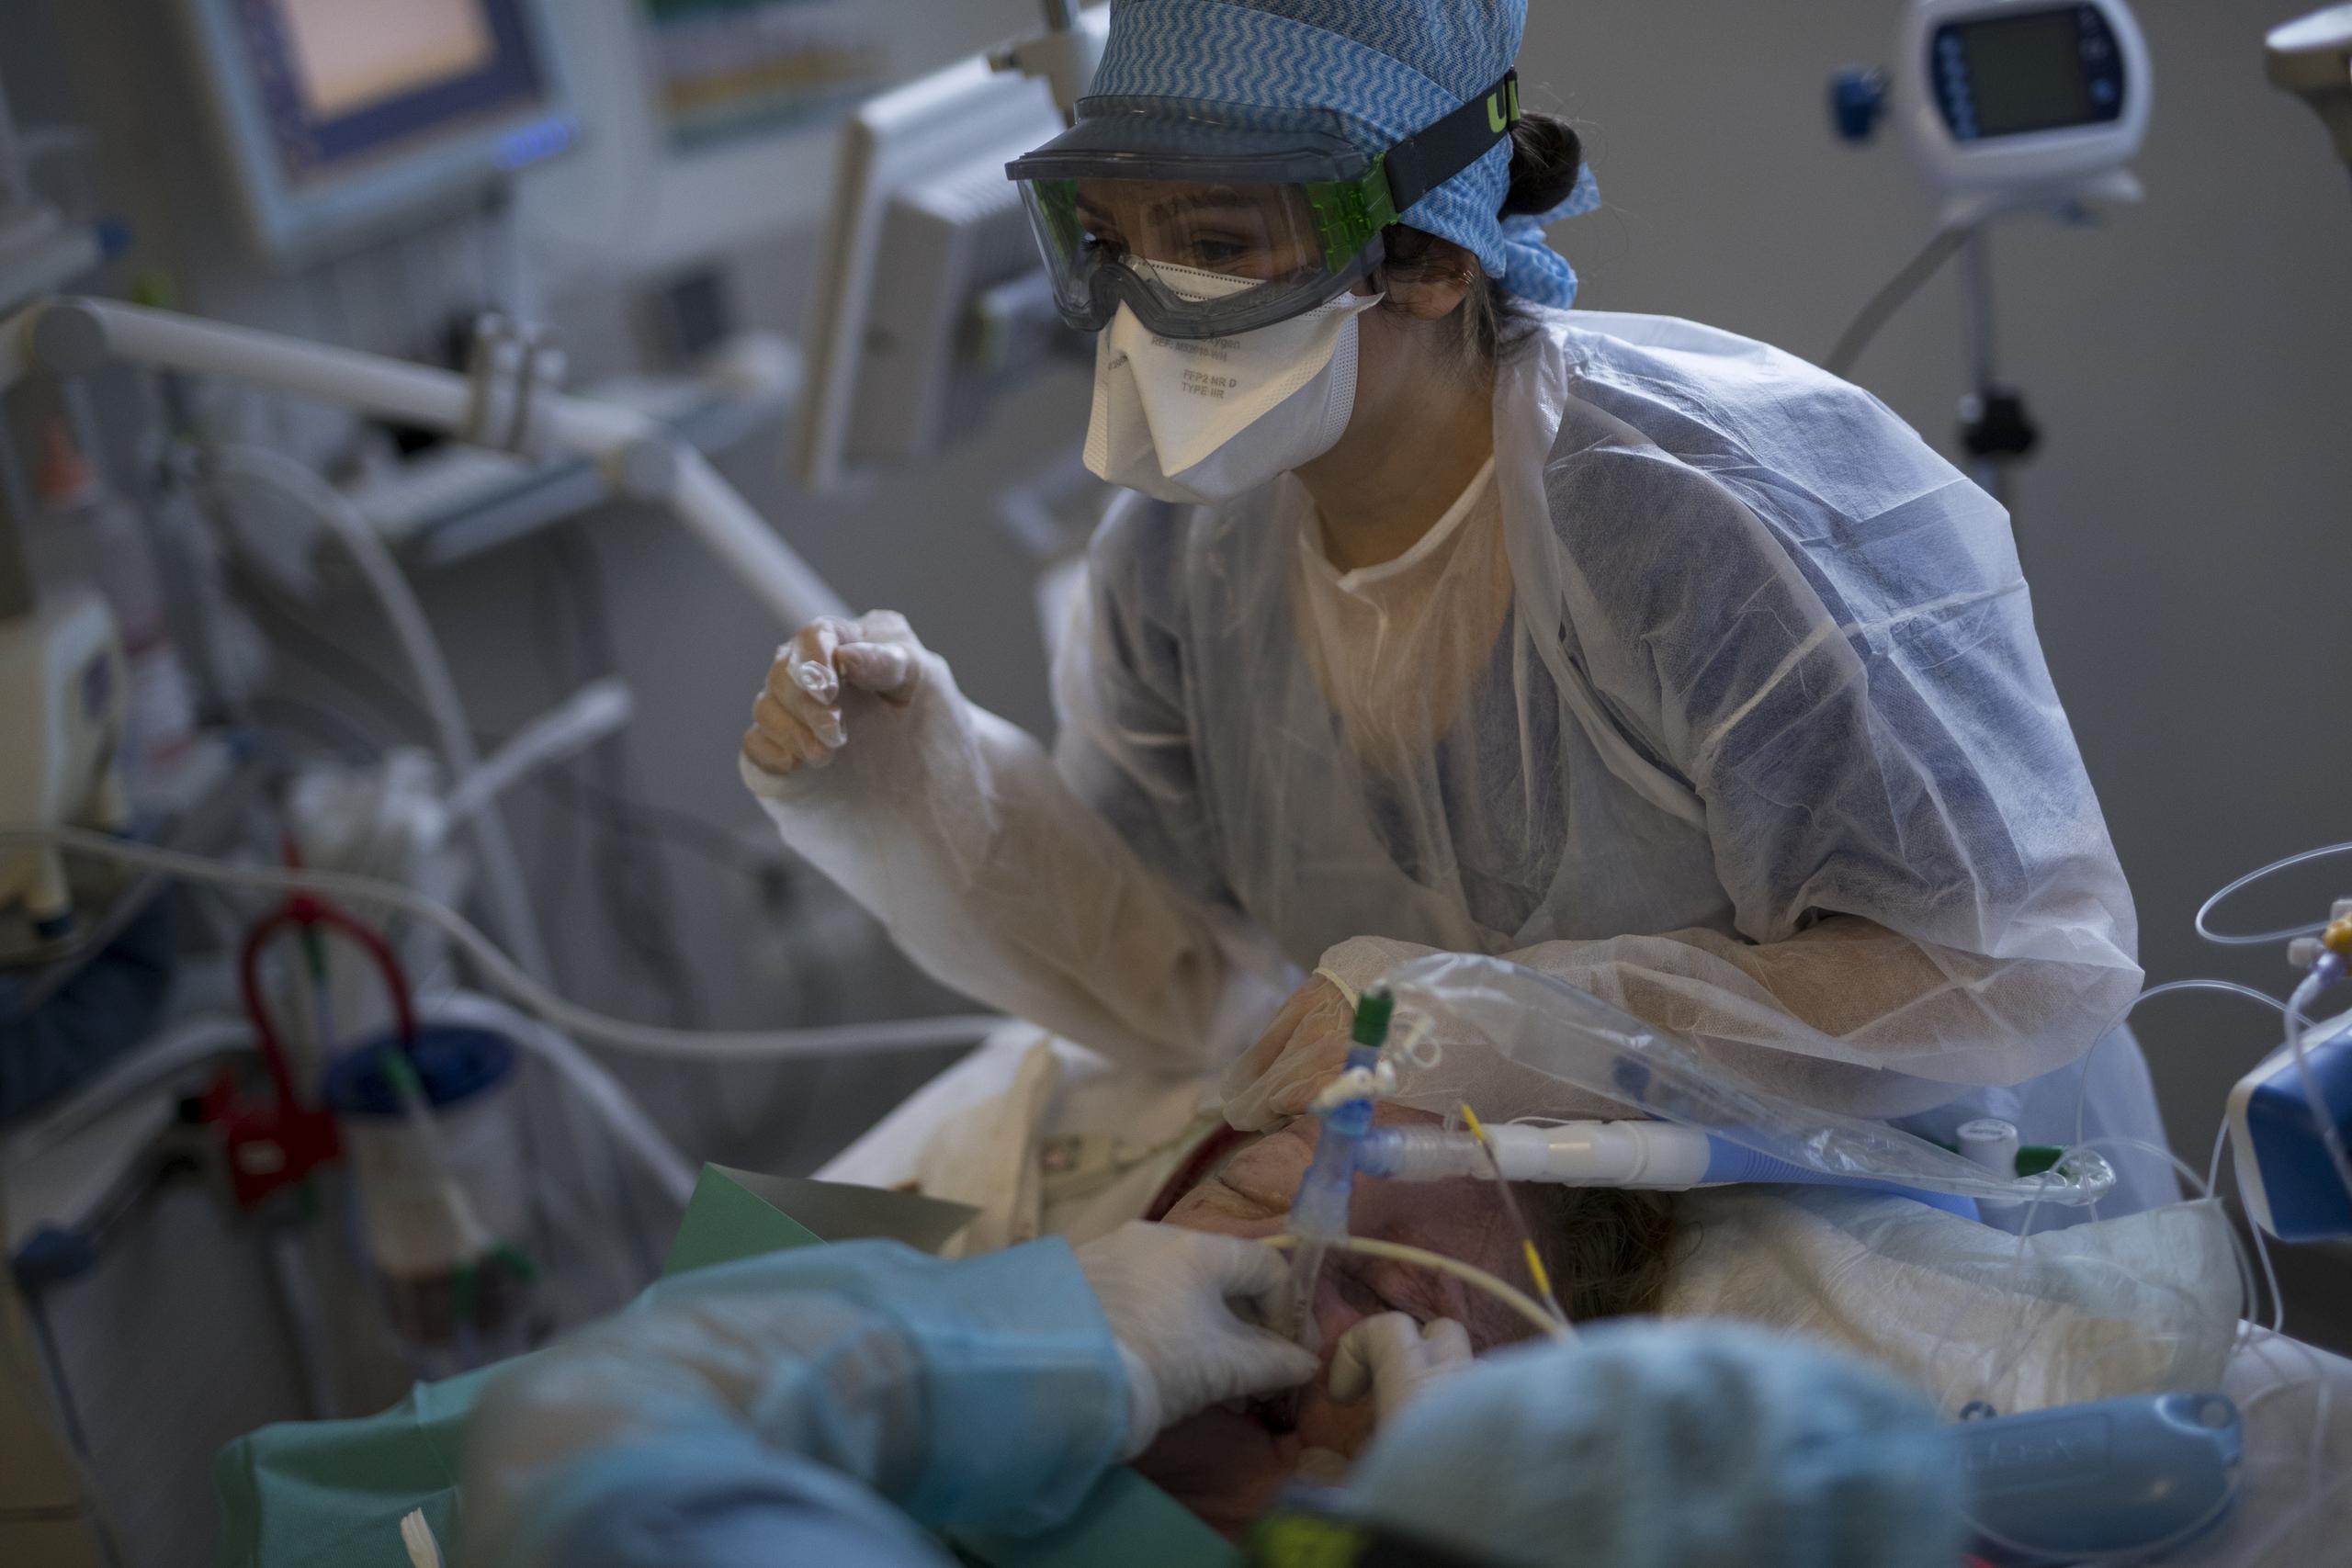 Efermeras vuelven a colocar un respirador, después de limiparlo, a un paciente de COVID-19 en la UCI del hospital La Timone de Marsella.